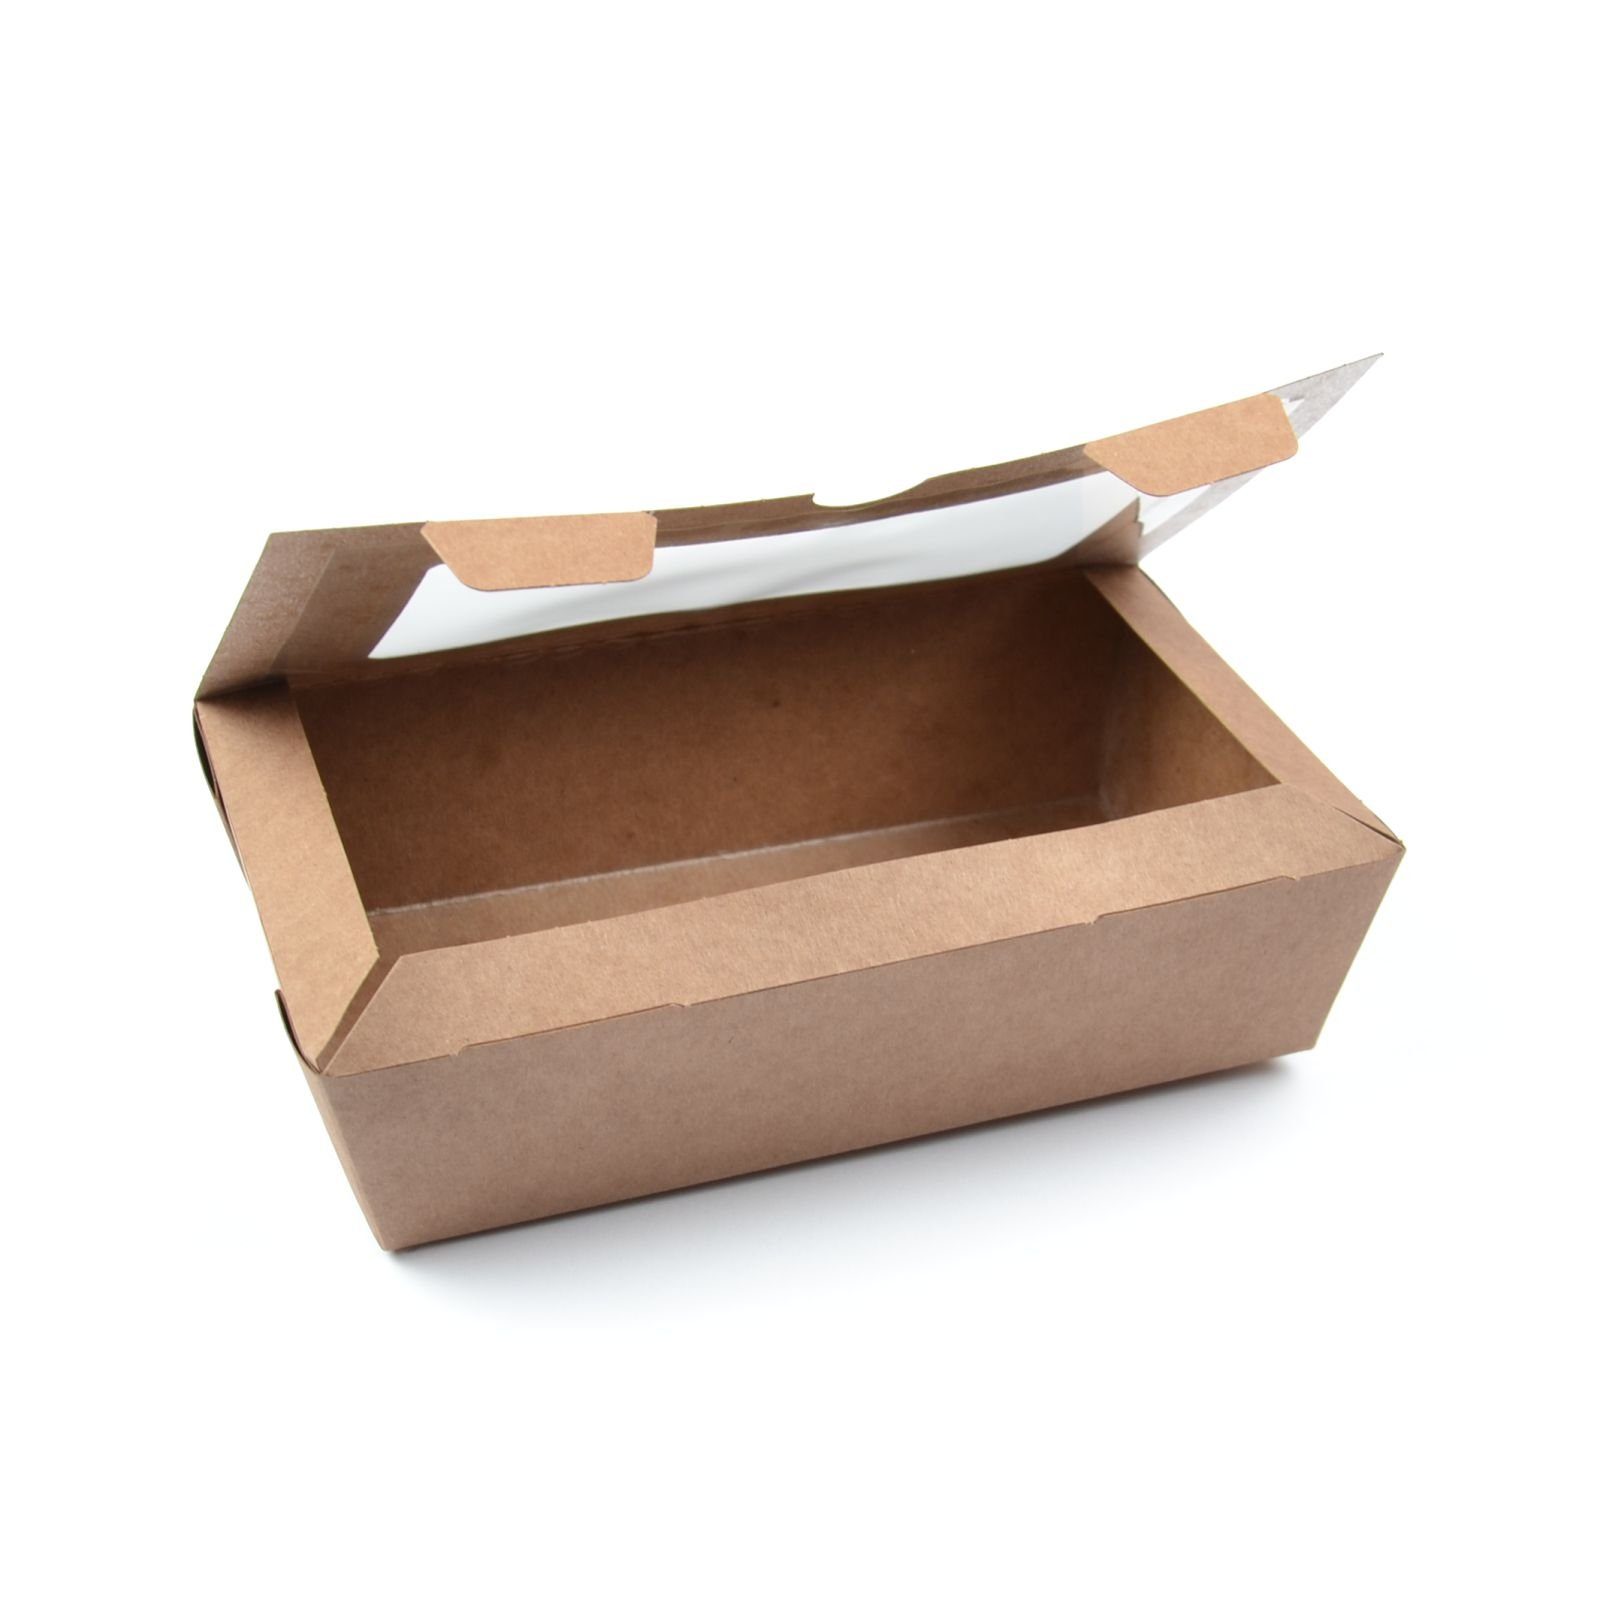 M), Sichtfenster Stück mit Box Foodcase Fast Snackbox Boxen (Größe kraft, mit Food (180×100×50 Food Einwegschale mm), Fenster 50